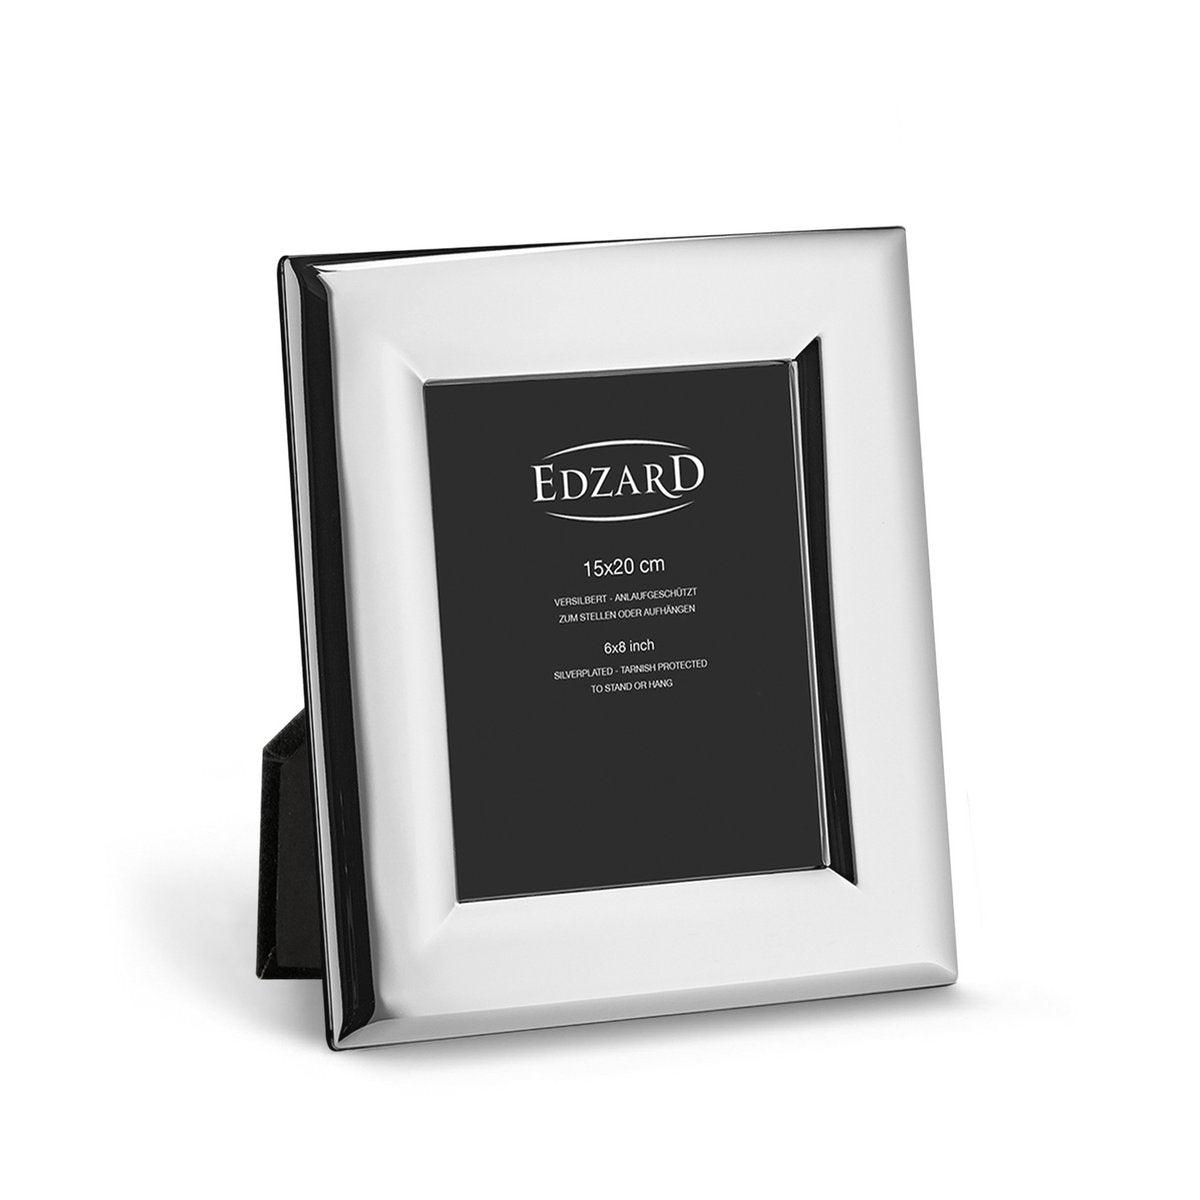 EDZARD Fotorahmen Positano für Foto 15 x 20 cm, edel versilbert, anlaufgeschützt, mit 2 Aufhängern - HomeDesign Knaus